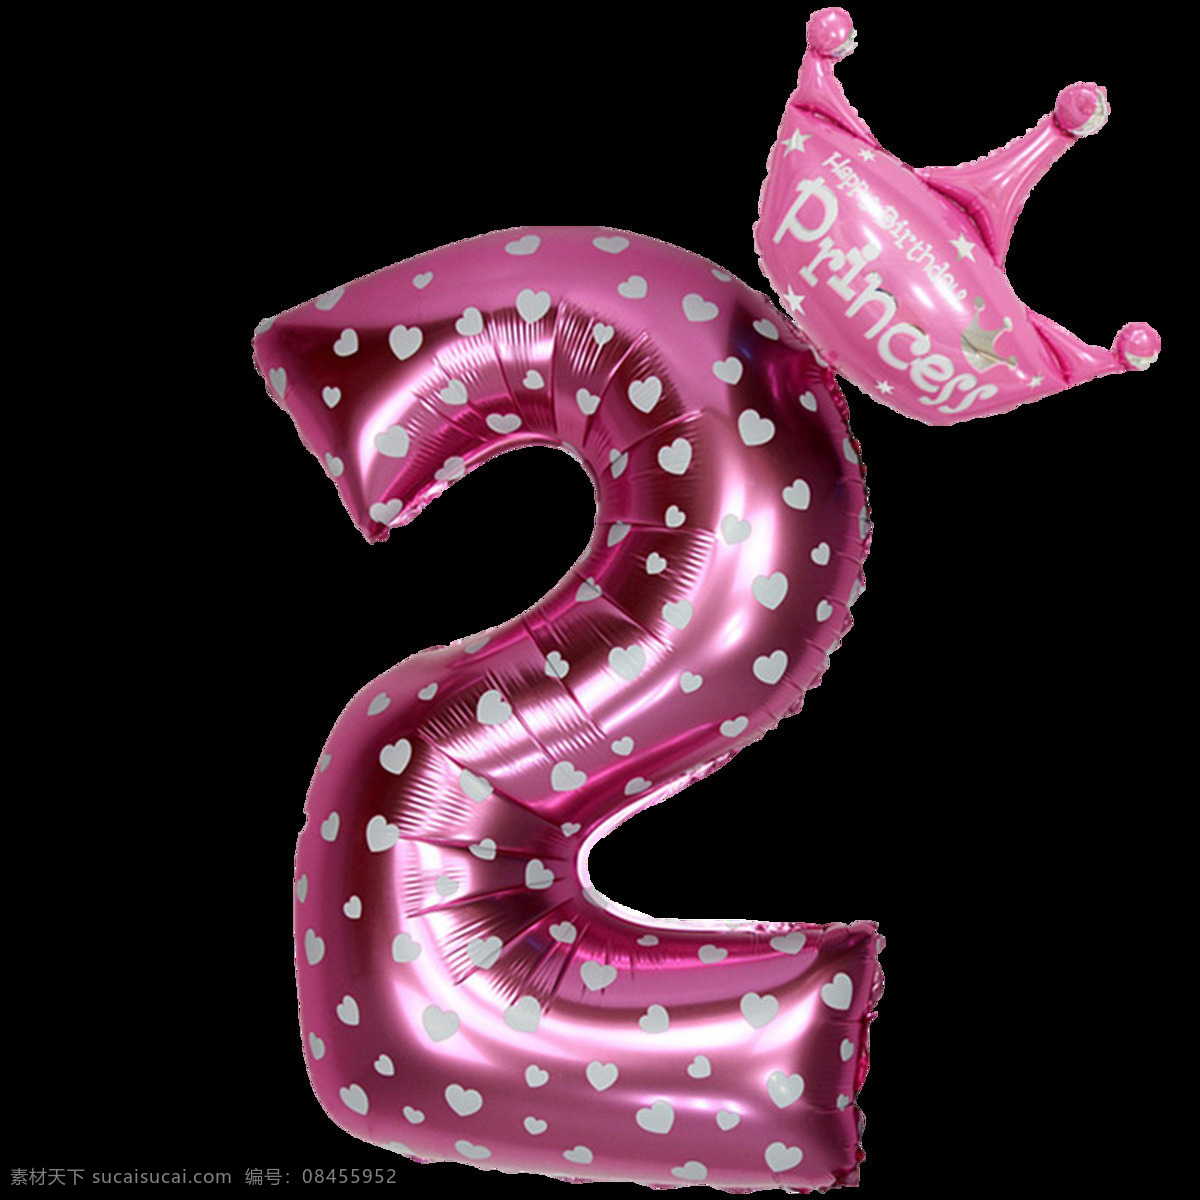 粉色气球字2 粉色气球字 王冠气球字 气球字 气球数字 铝膜气球字母 装饰字 派对气球 气球文字 字母气球 铝箔气球 3d设计 3d作品